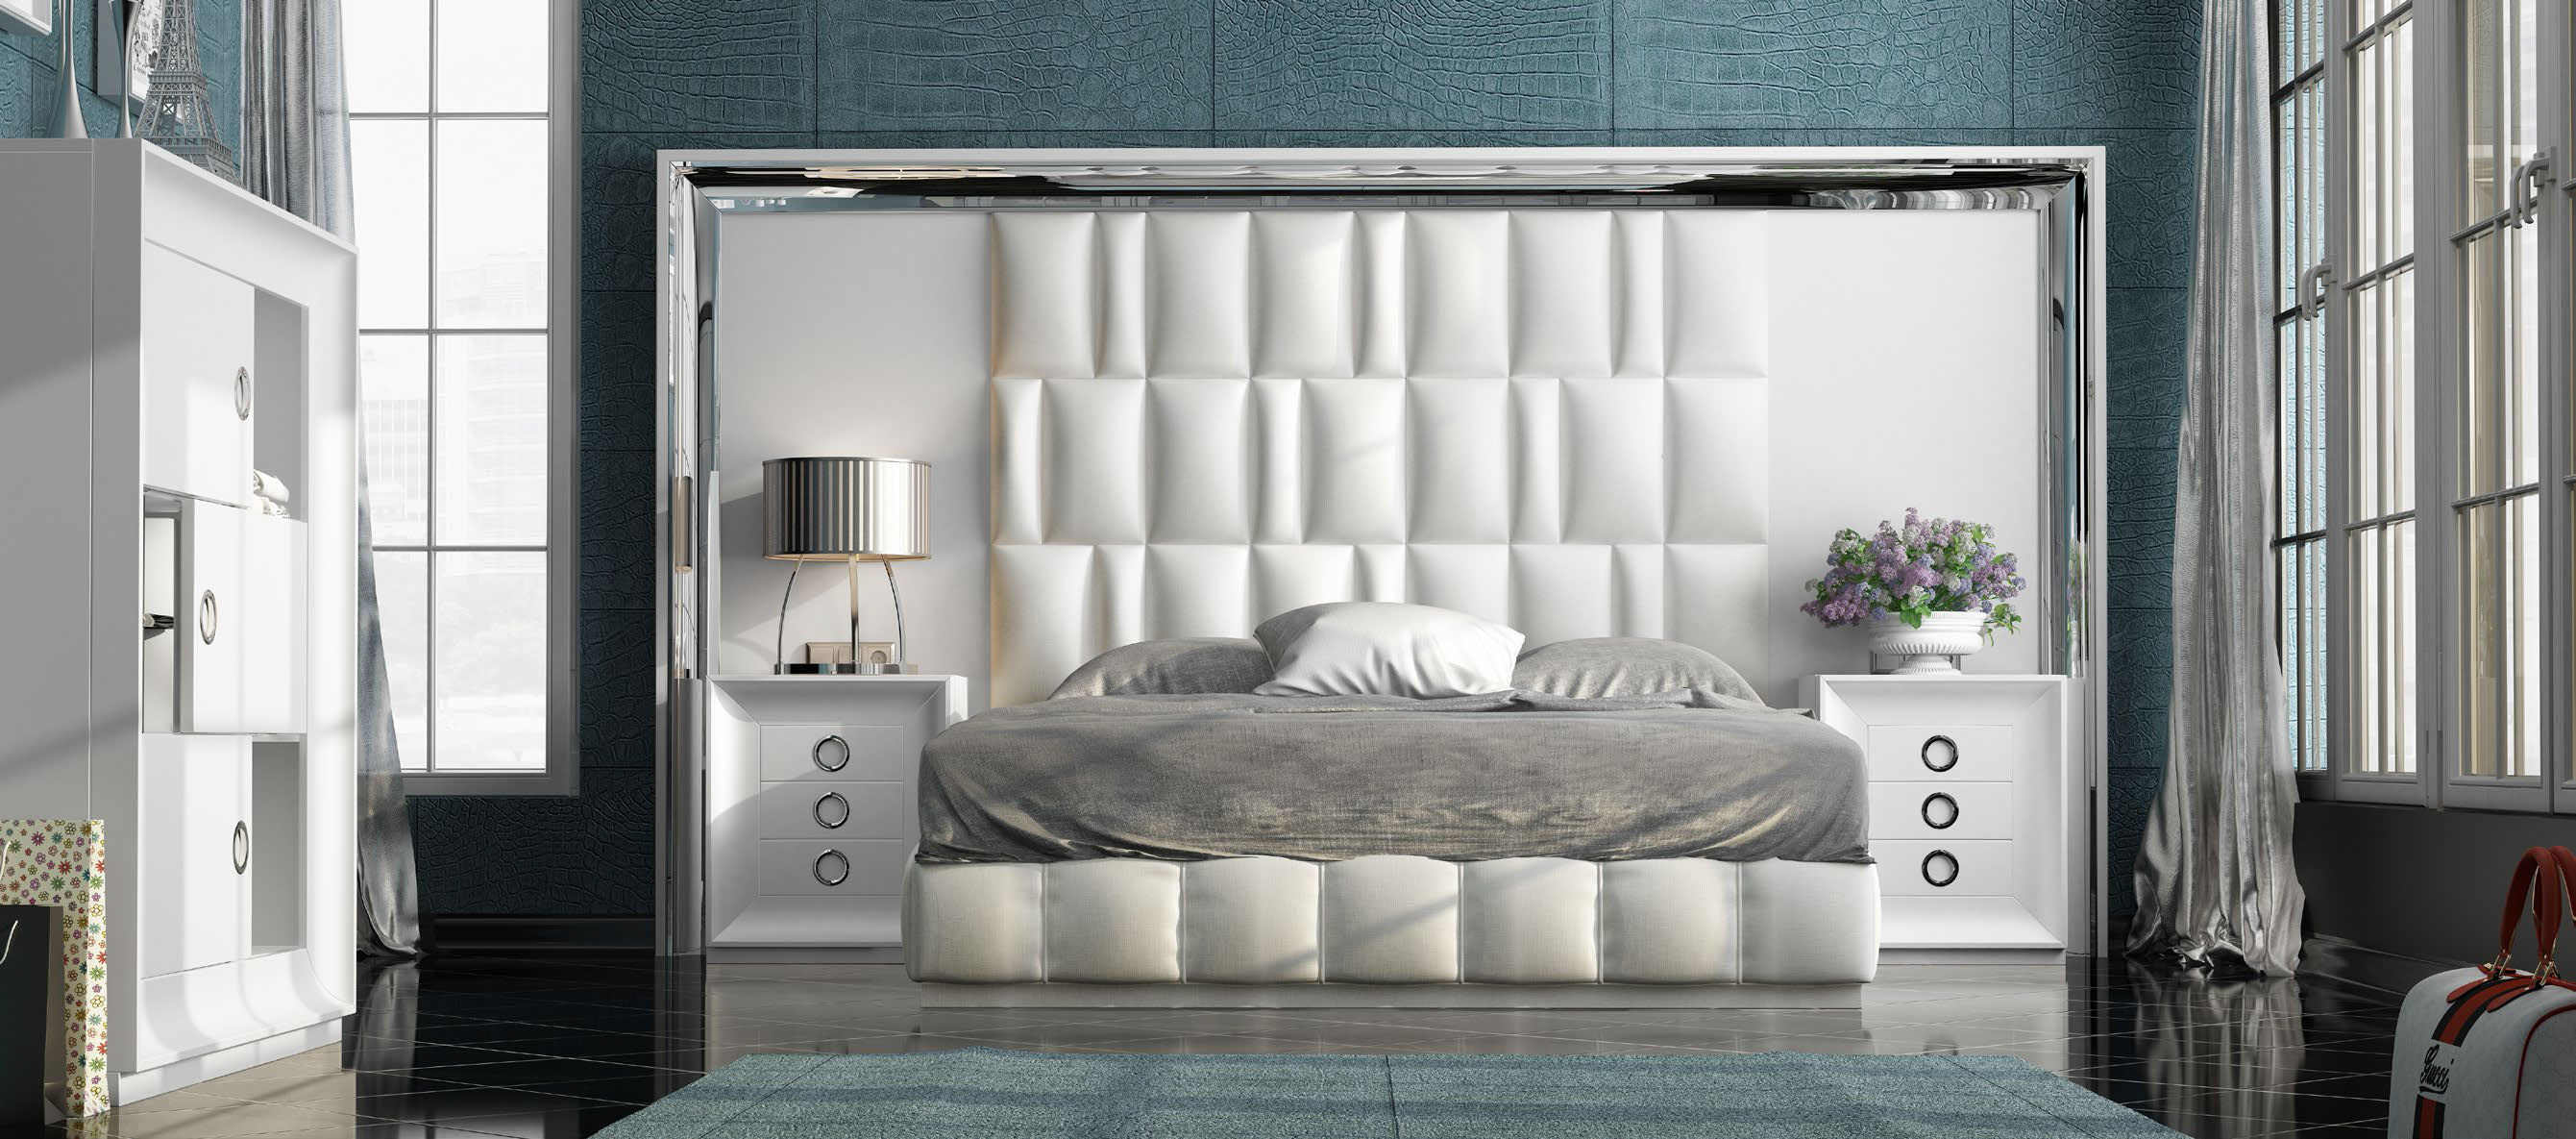 Brands Franco Furniture Avanty Bedrooms, Spain DOR 102